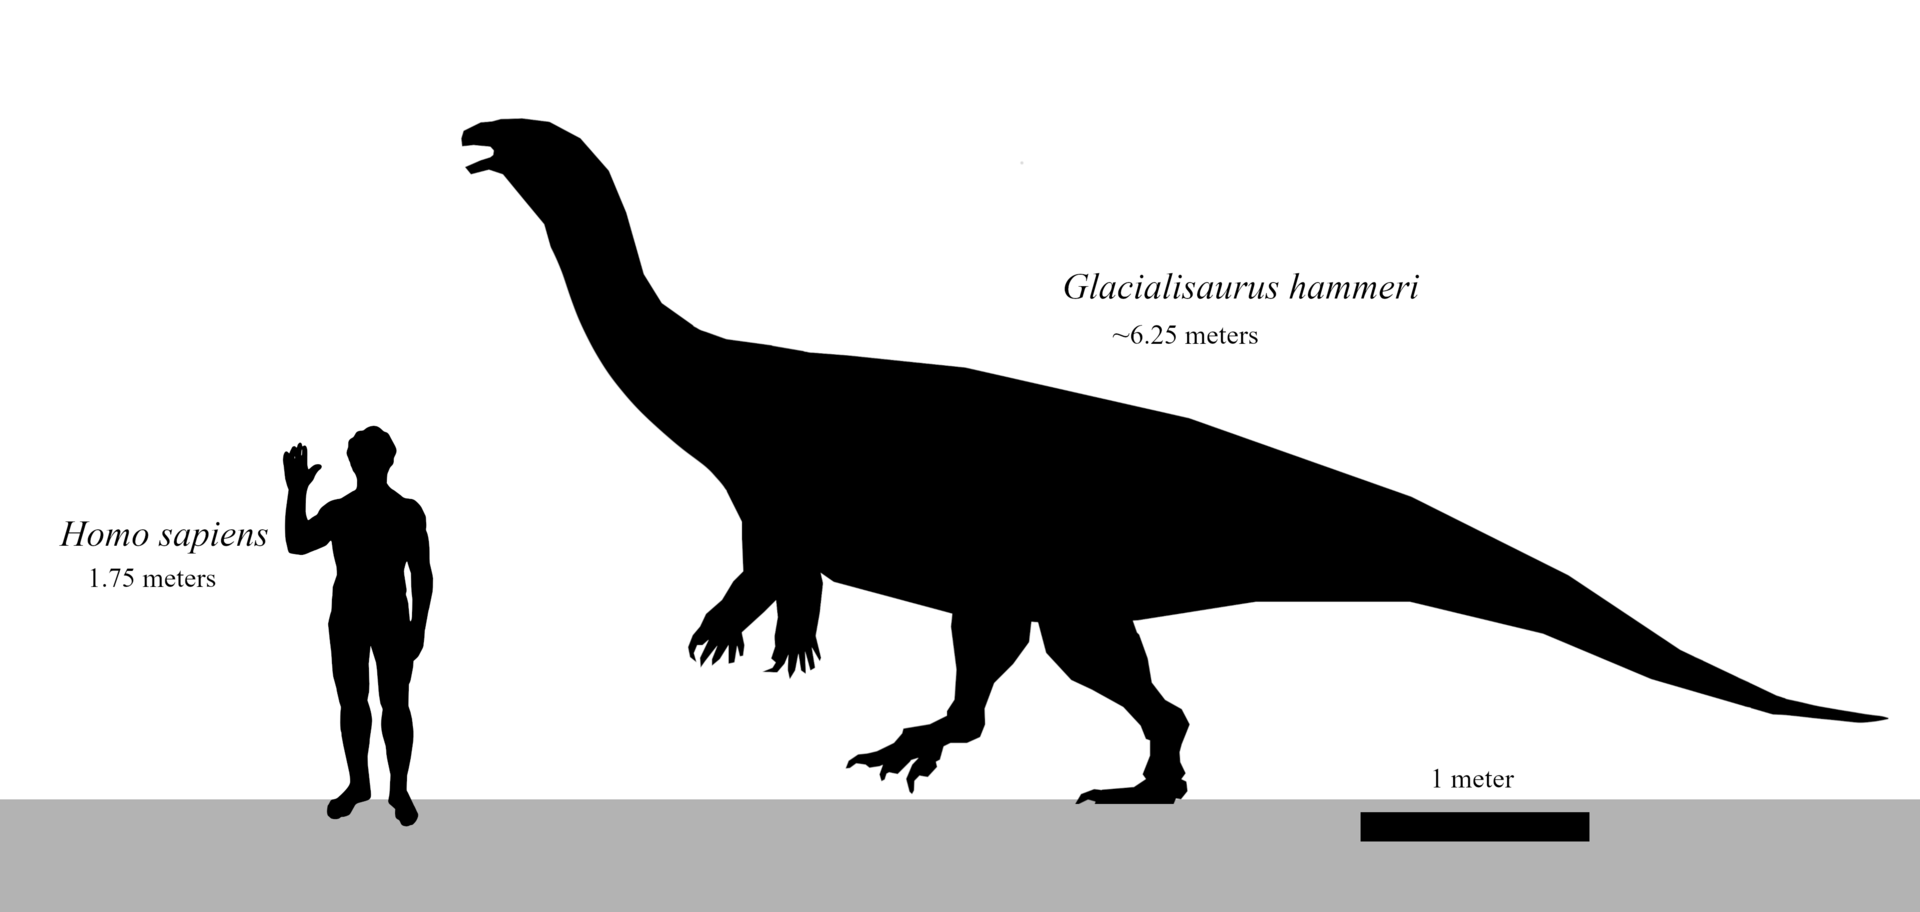 Glacialisaurus hammeri byl relativně malým sauropodomorfem, ale na území současné Antarktidy v období rané jury patřil k největším živočichům ve svých ekosystémech. Velcí jedinci dosahovali délky přes 6 metrů a hmotnosti pravděpodobně až přes 1000 ki